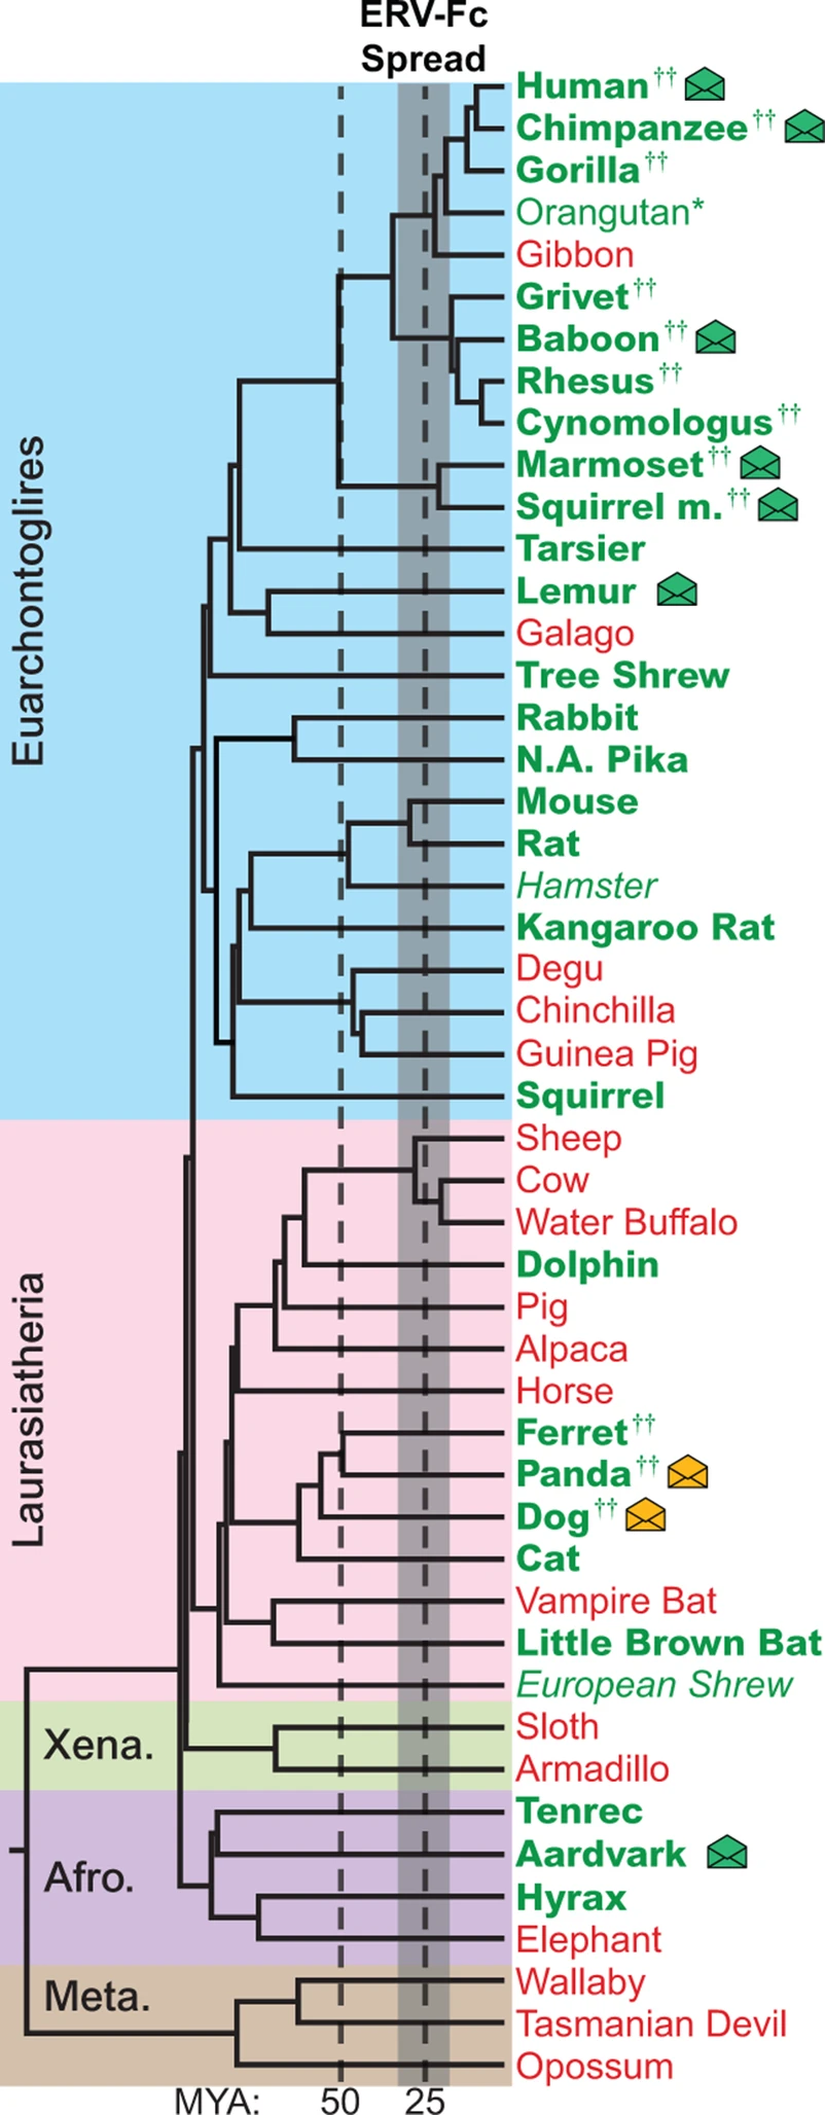 Figür 1: Genomları incelenen canlıların filogenetik tablosu. Yeşiller, ERV-Fc kalıntılarına sahip olanlar; kırmızılar, sahip olmayanlar. (Detaylar için linke tıklayabilirsiniz)